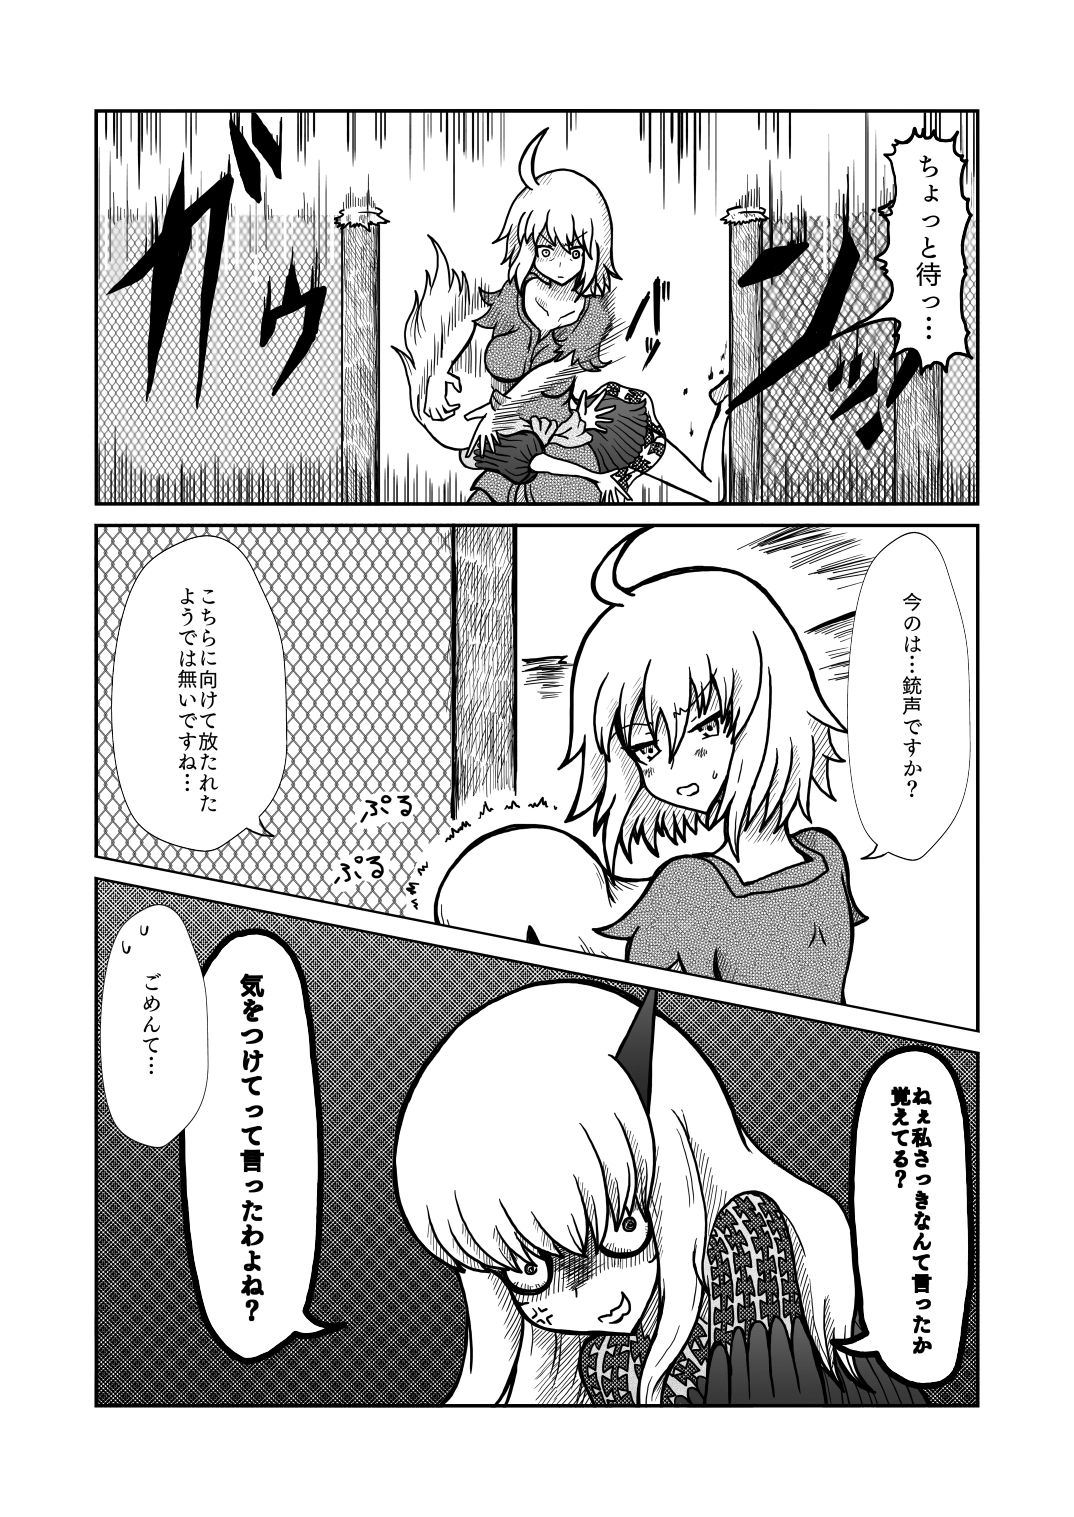 [Shigato] Jeanne x Lavi Dunwich Kai Kikou (Fate/Grand Order, Cthulhu Mythos) [Digital] 14